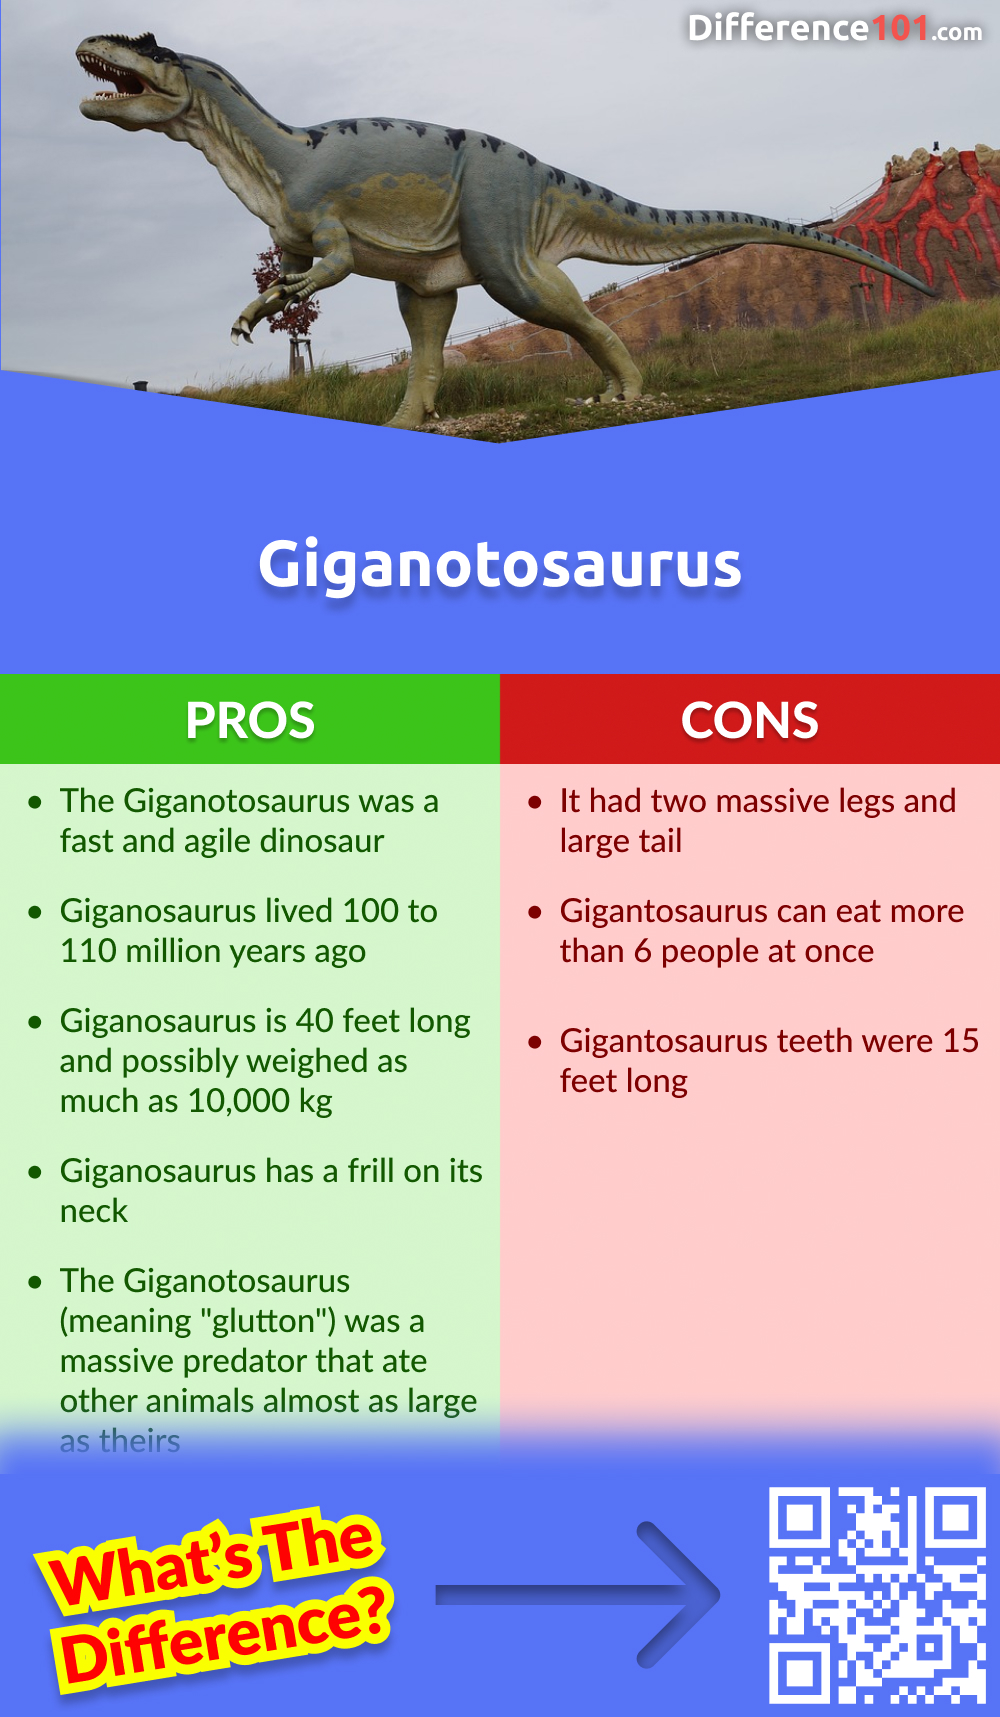 Giganotosaurus Pros & Cons